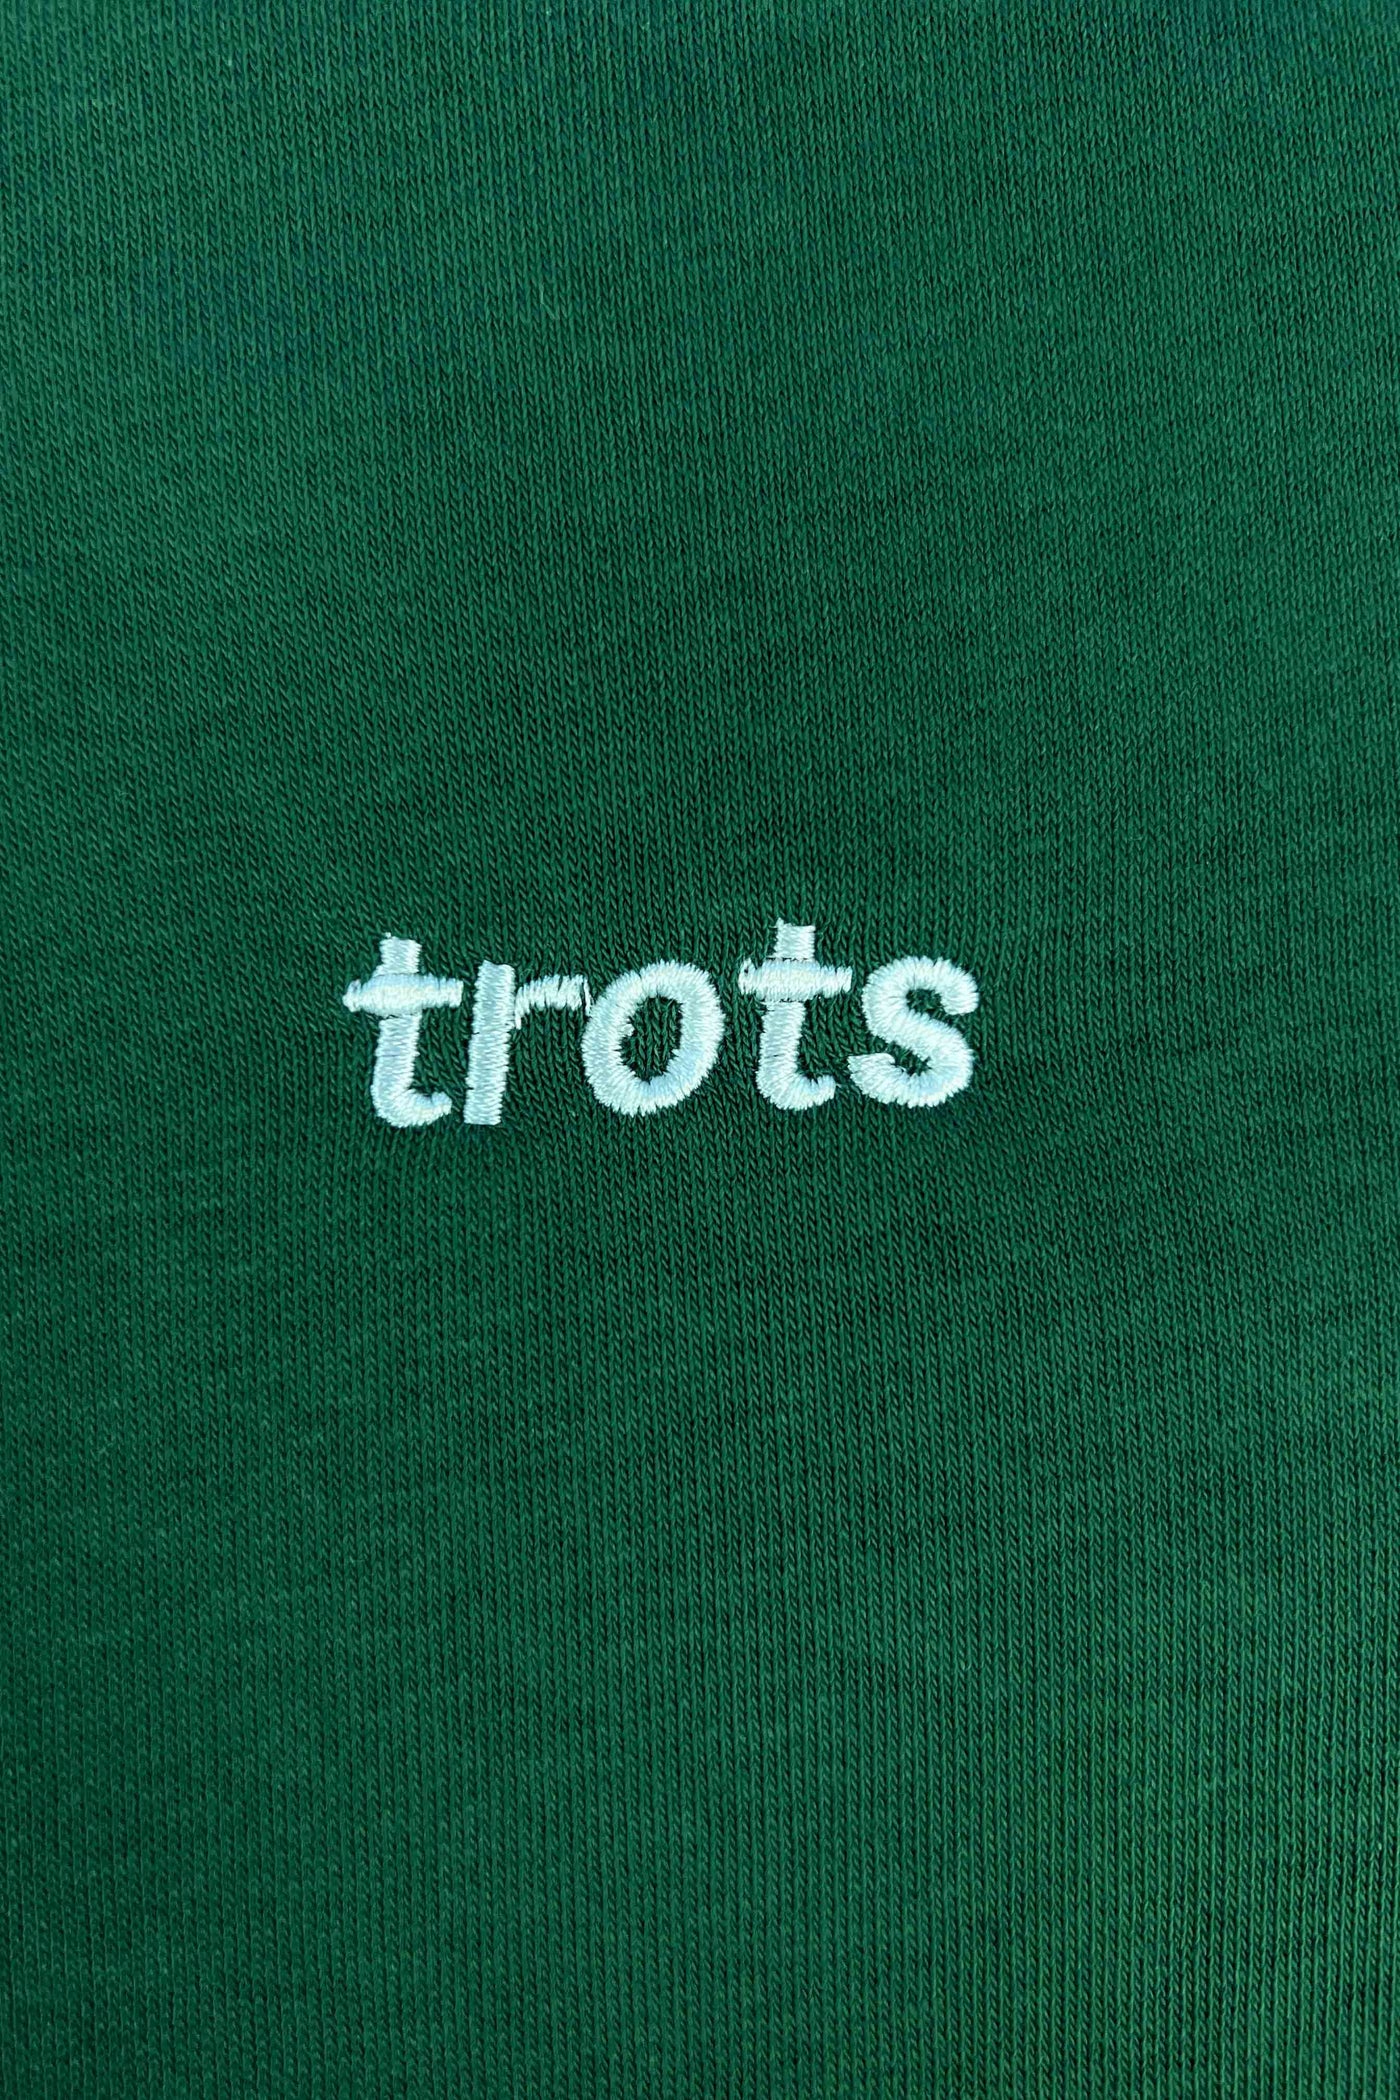 Trots | Sweater